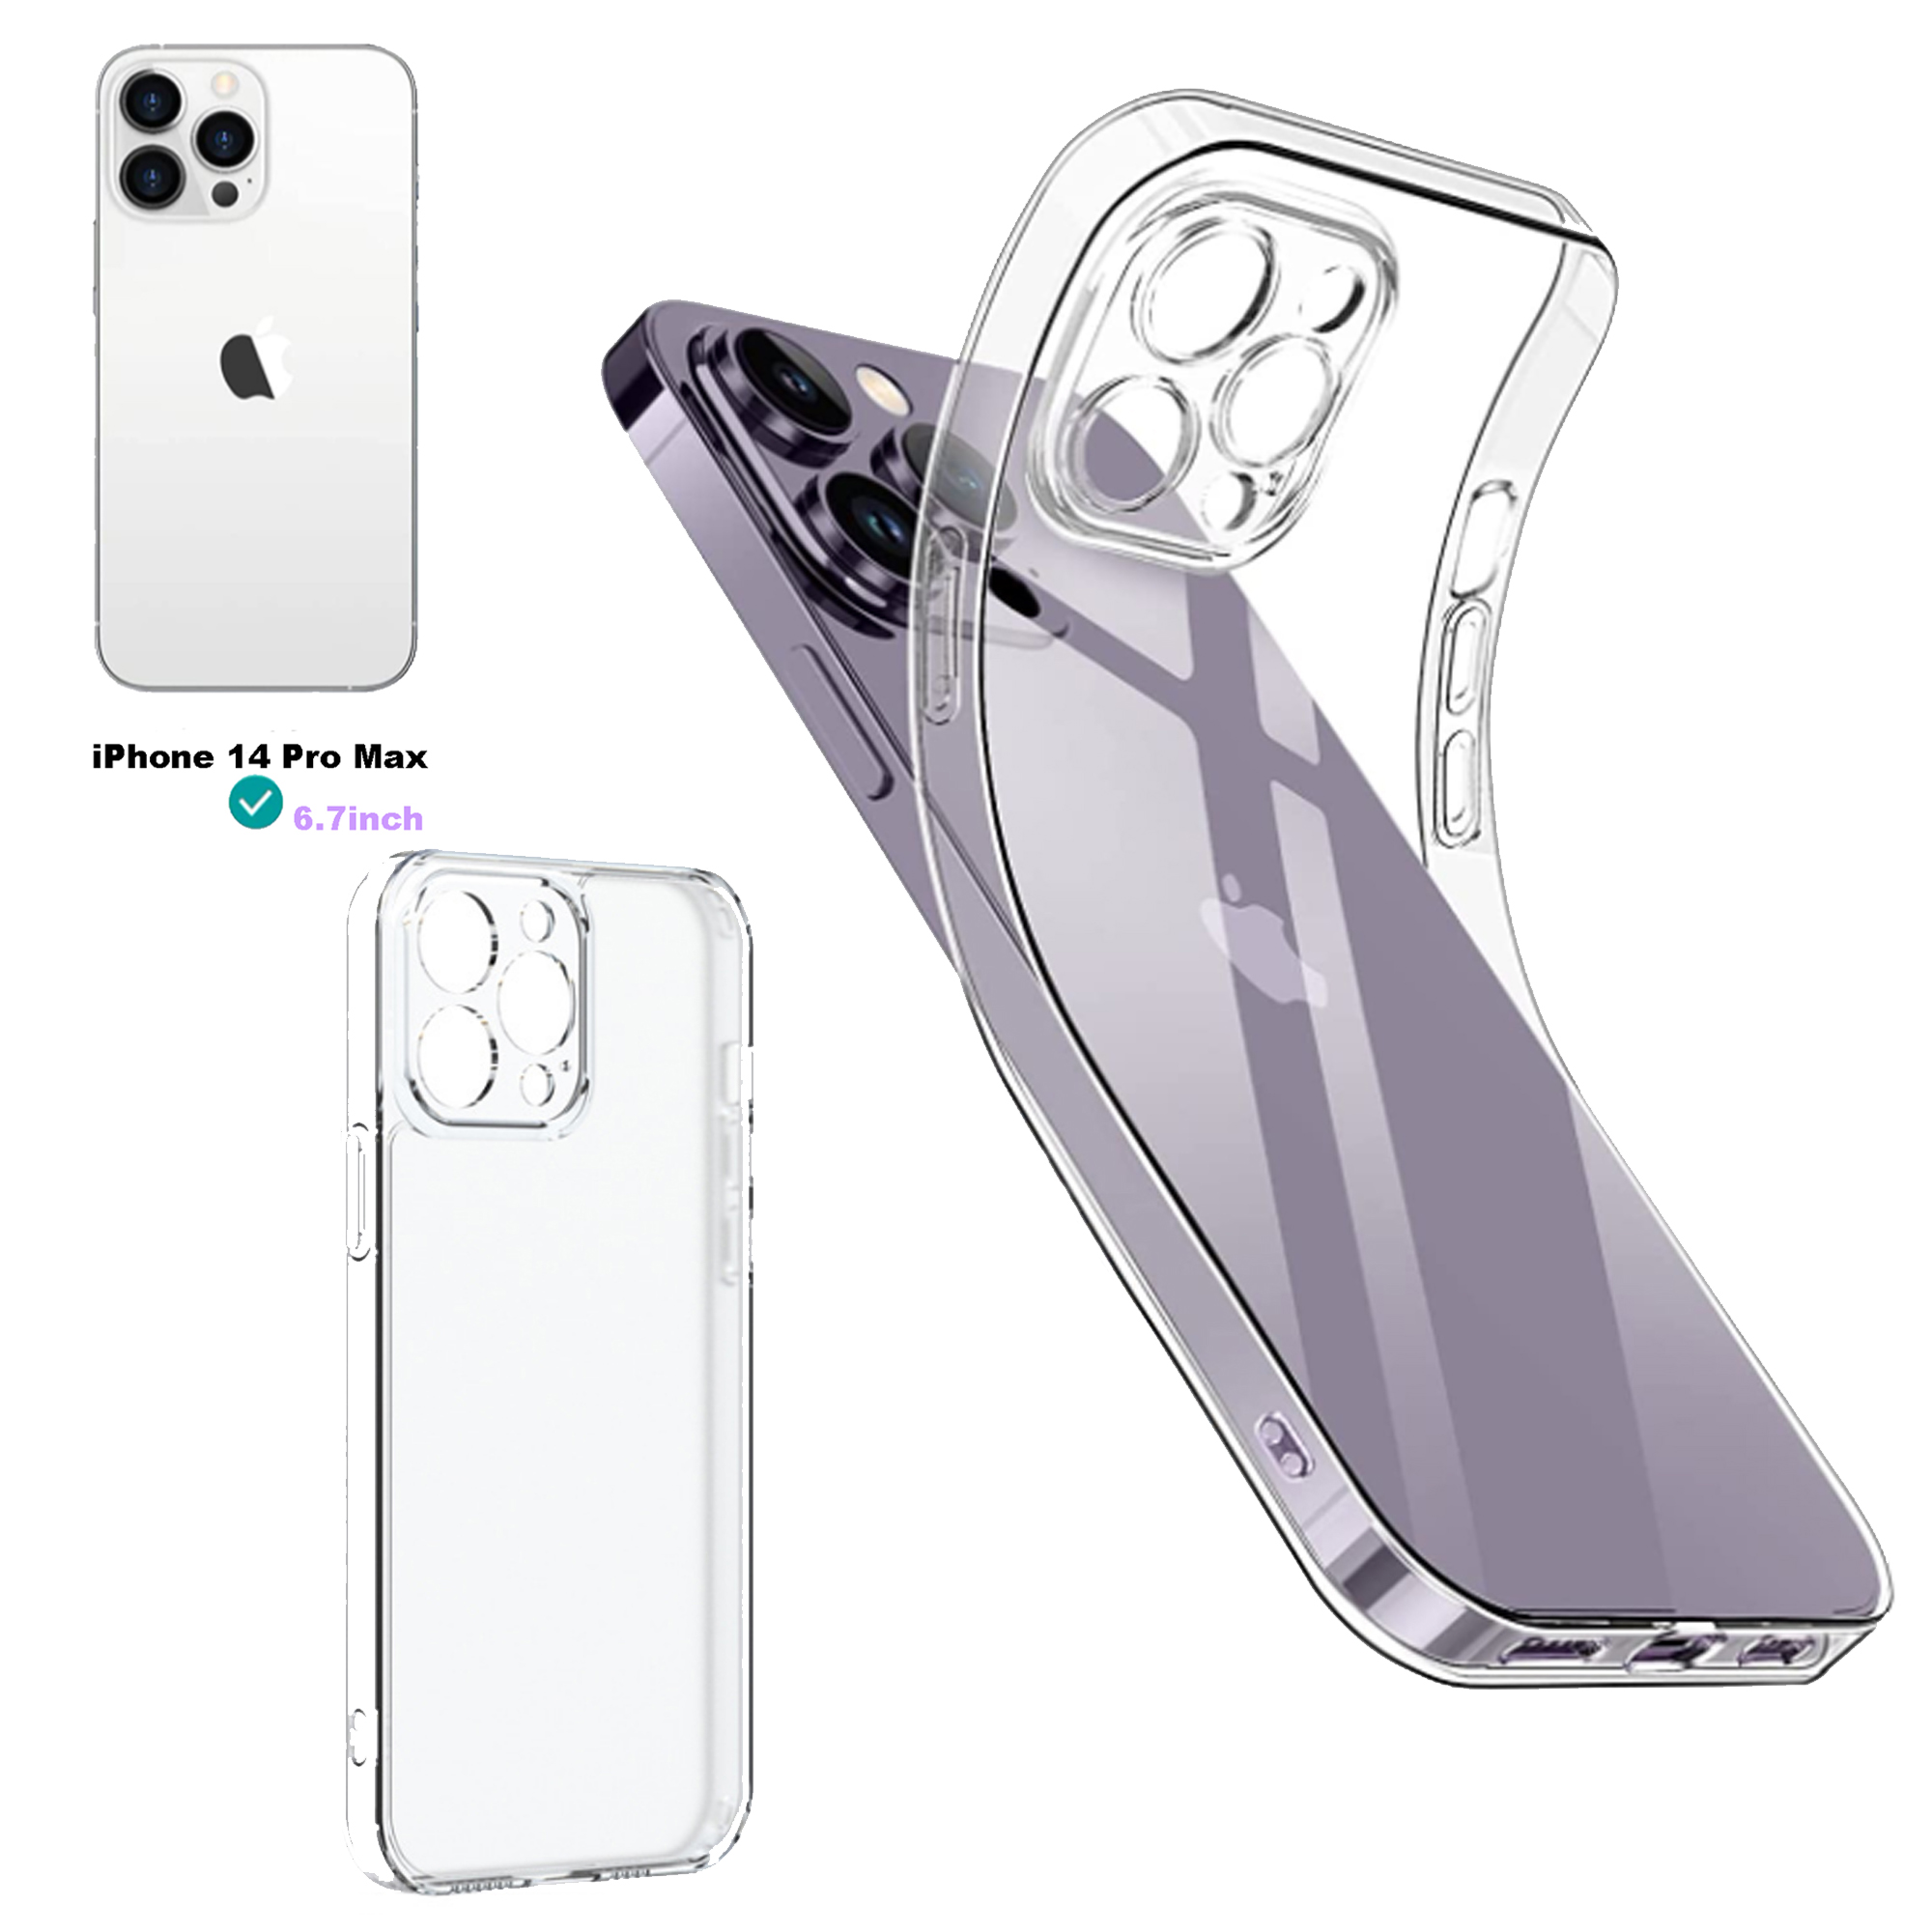  Speck Funda para iPhone 14 Pro Max – Protección contra caídas  con funda delgada de doble capa resistente a los arañazos para iPhone 14  Pro Max de 6.7 pulgadas – Funda